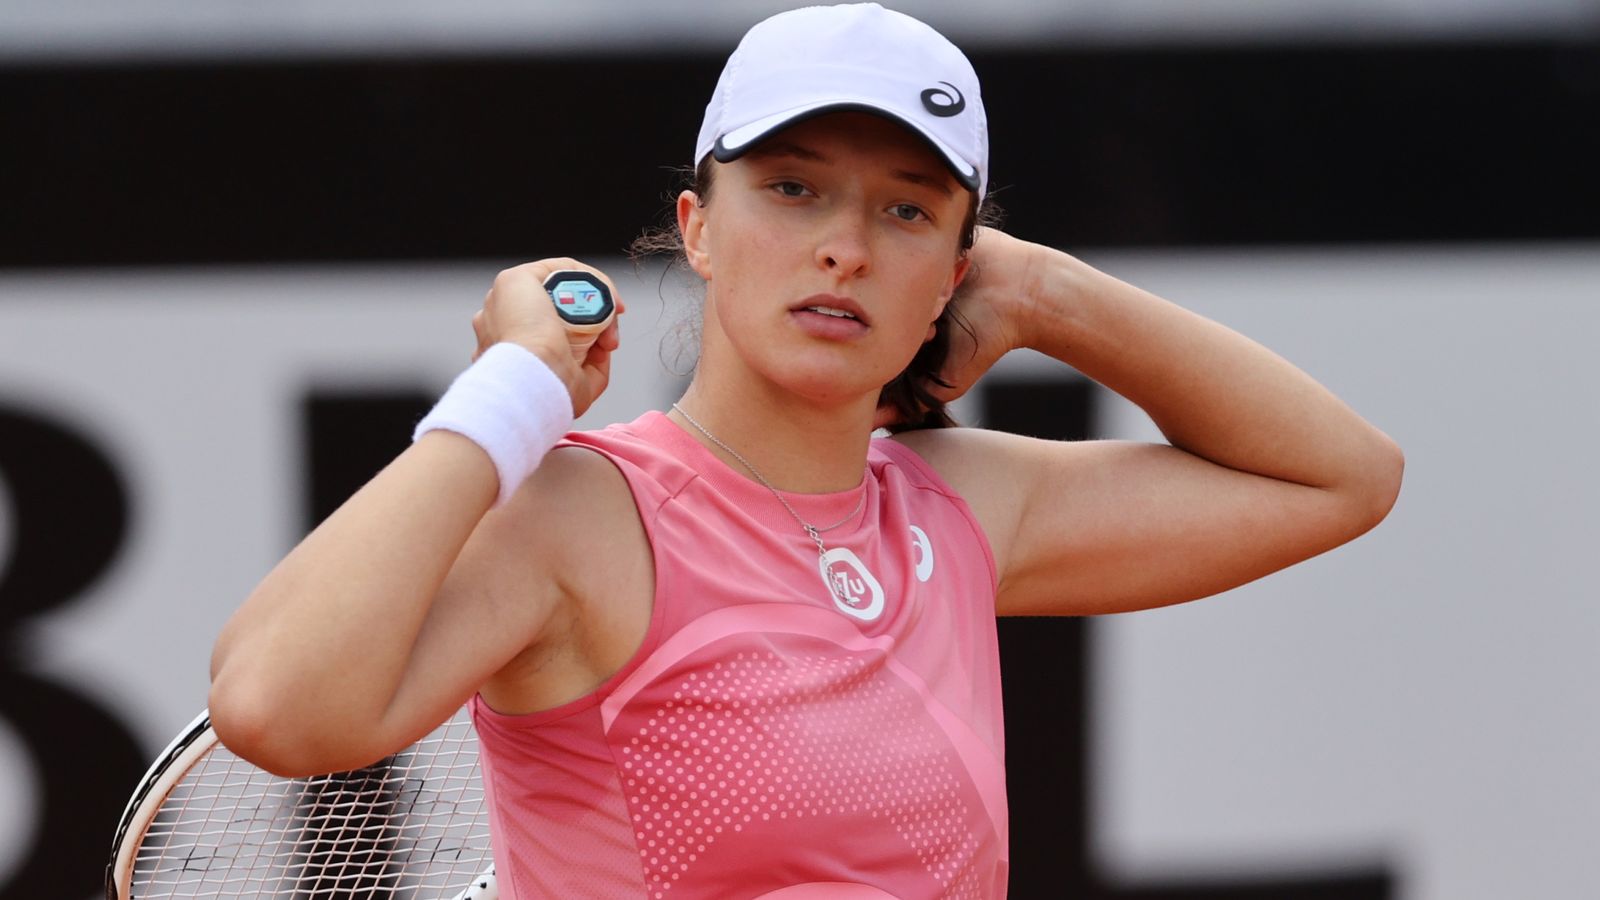 French Open champion Iga Swiatek wins twice in a day to set up Rome final  with Karolina Pliskova | Tennis News | Sky Sports